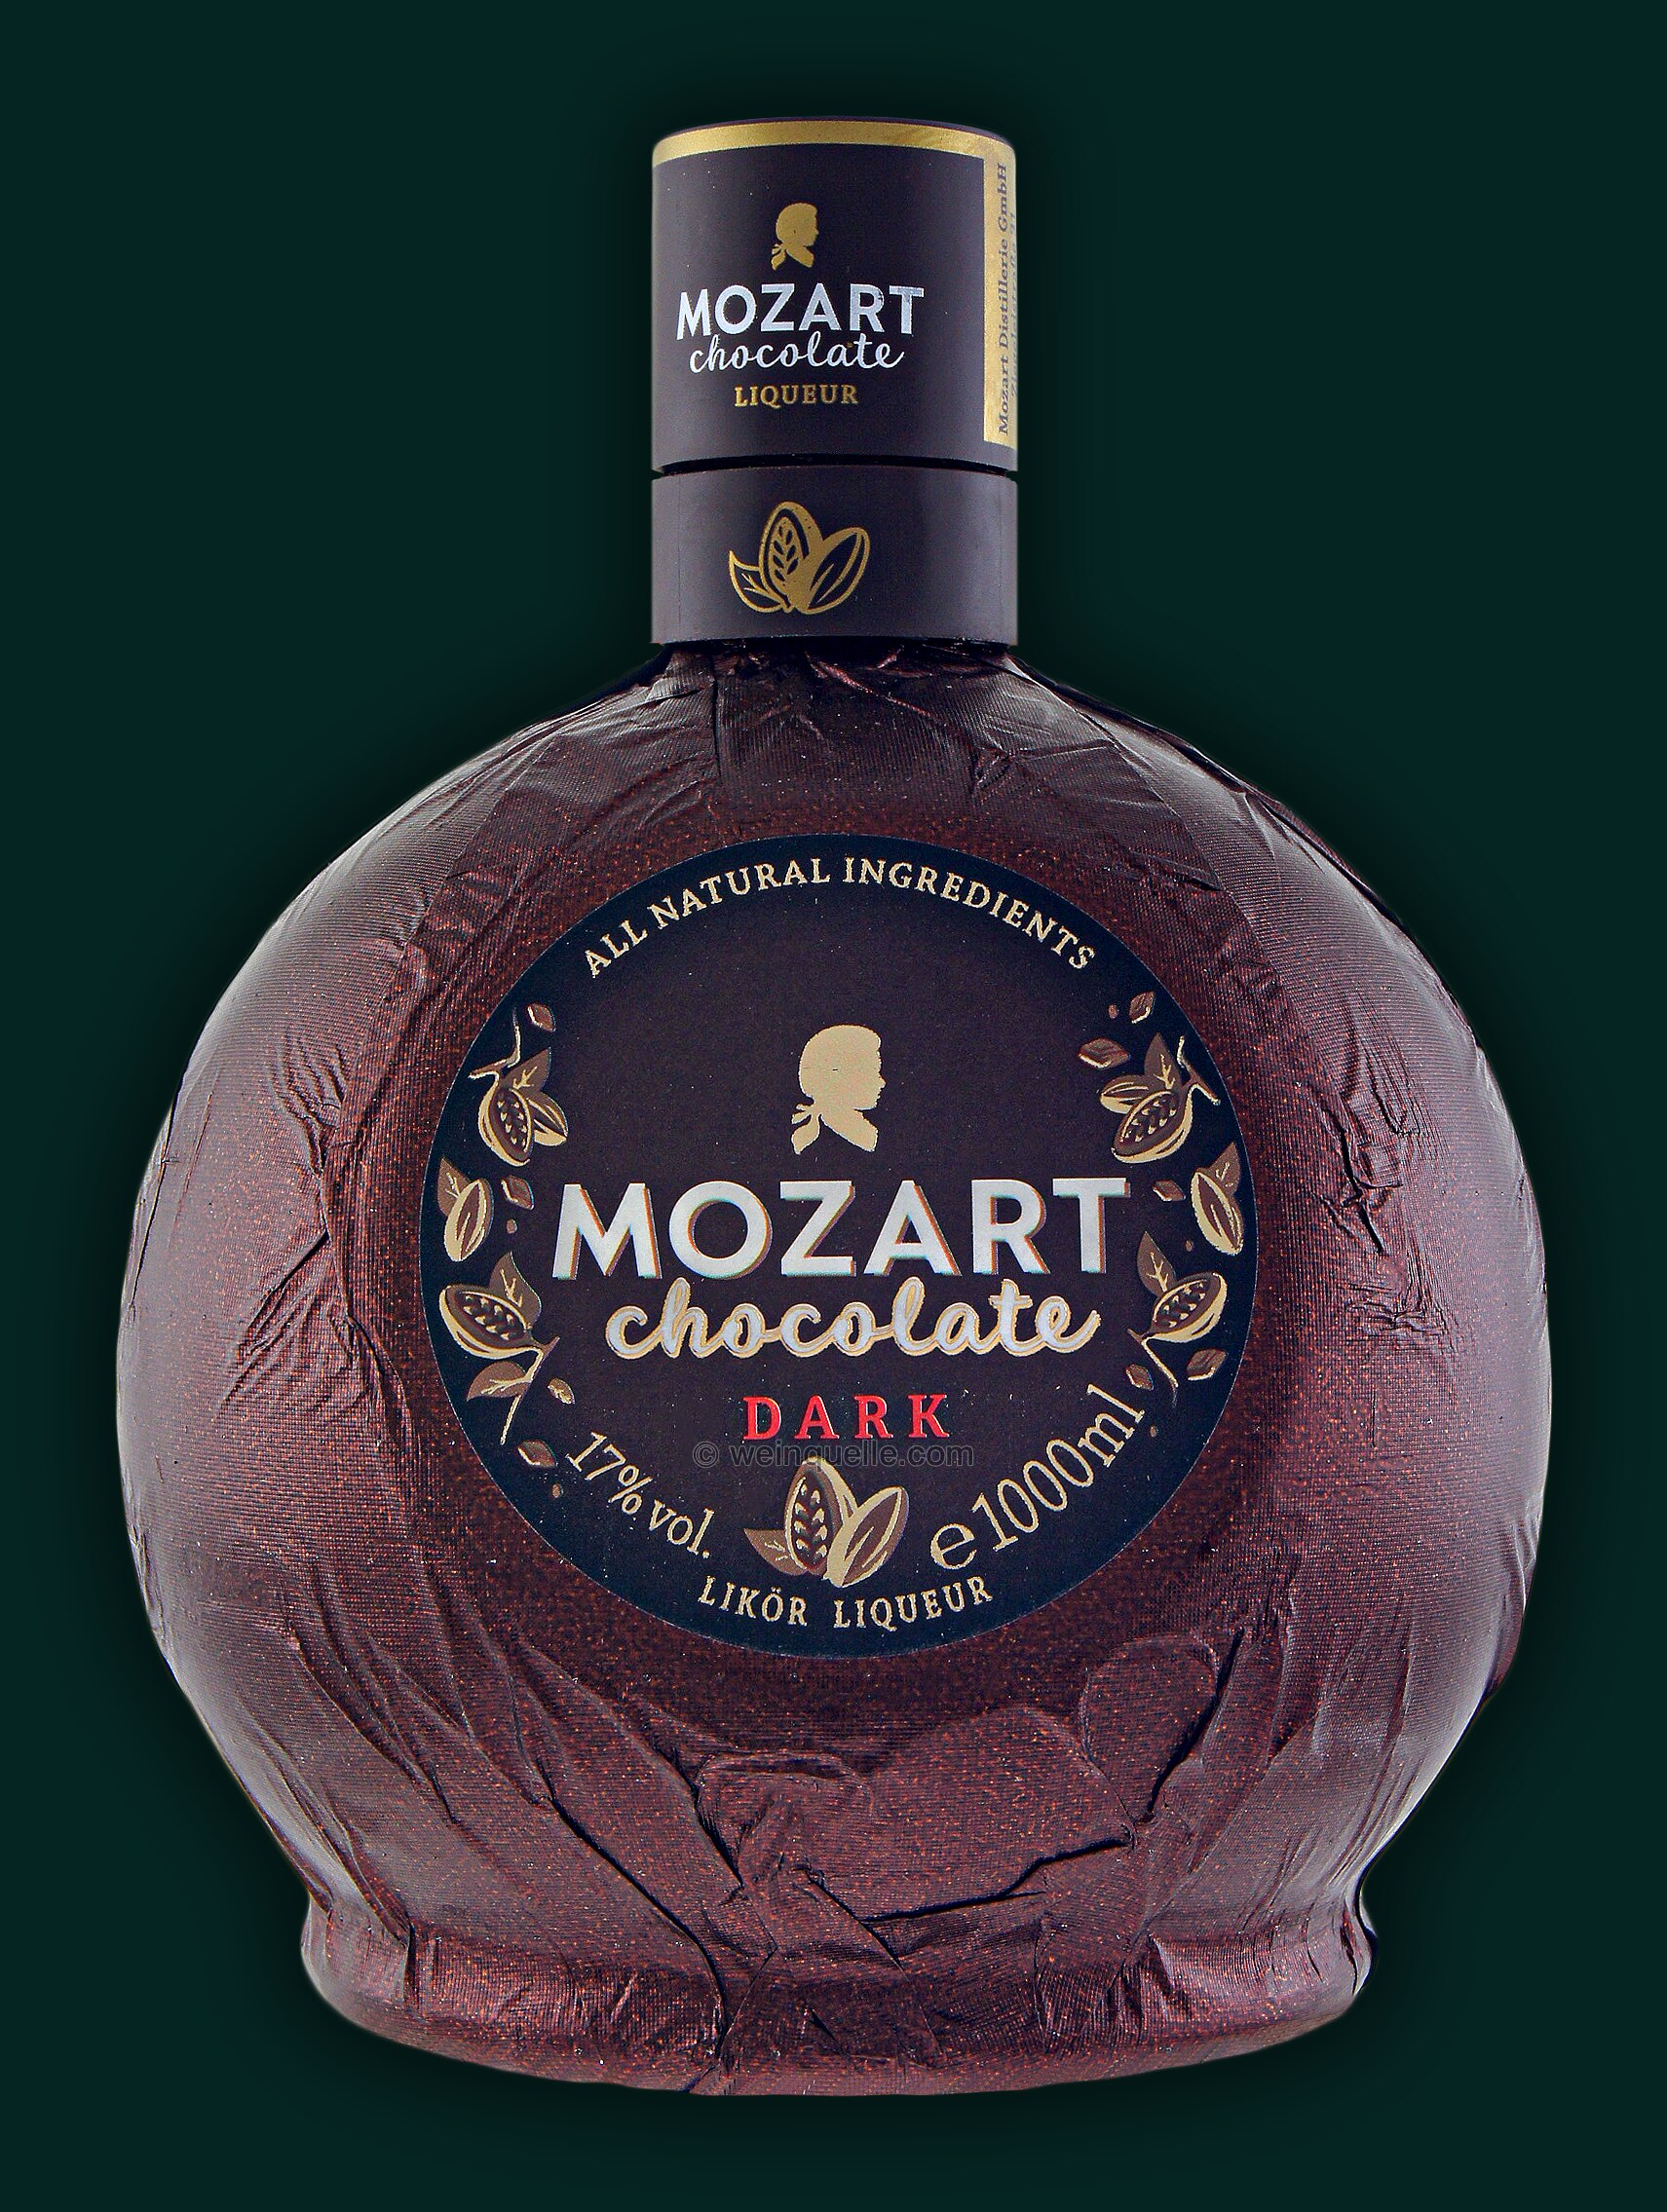 € Weinquelle Lühmann 1,0 Mozart Chocolate 22,50 - Dark Liter,